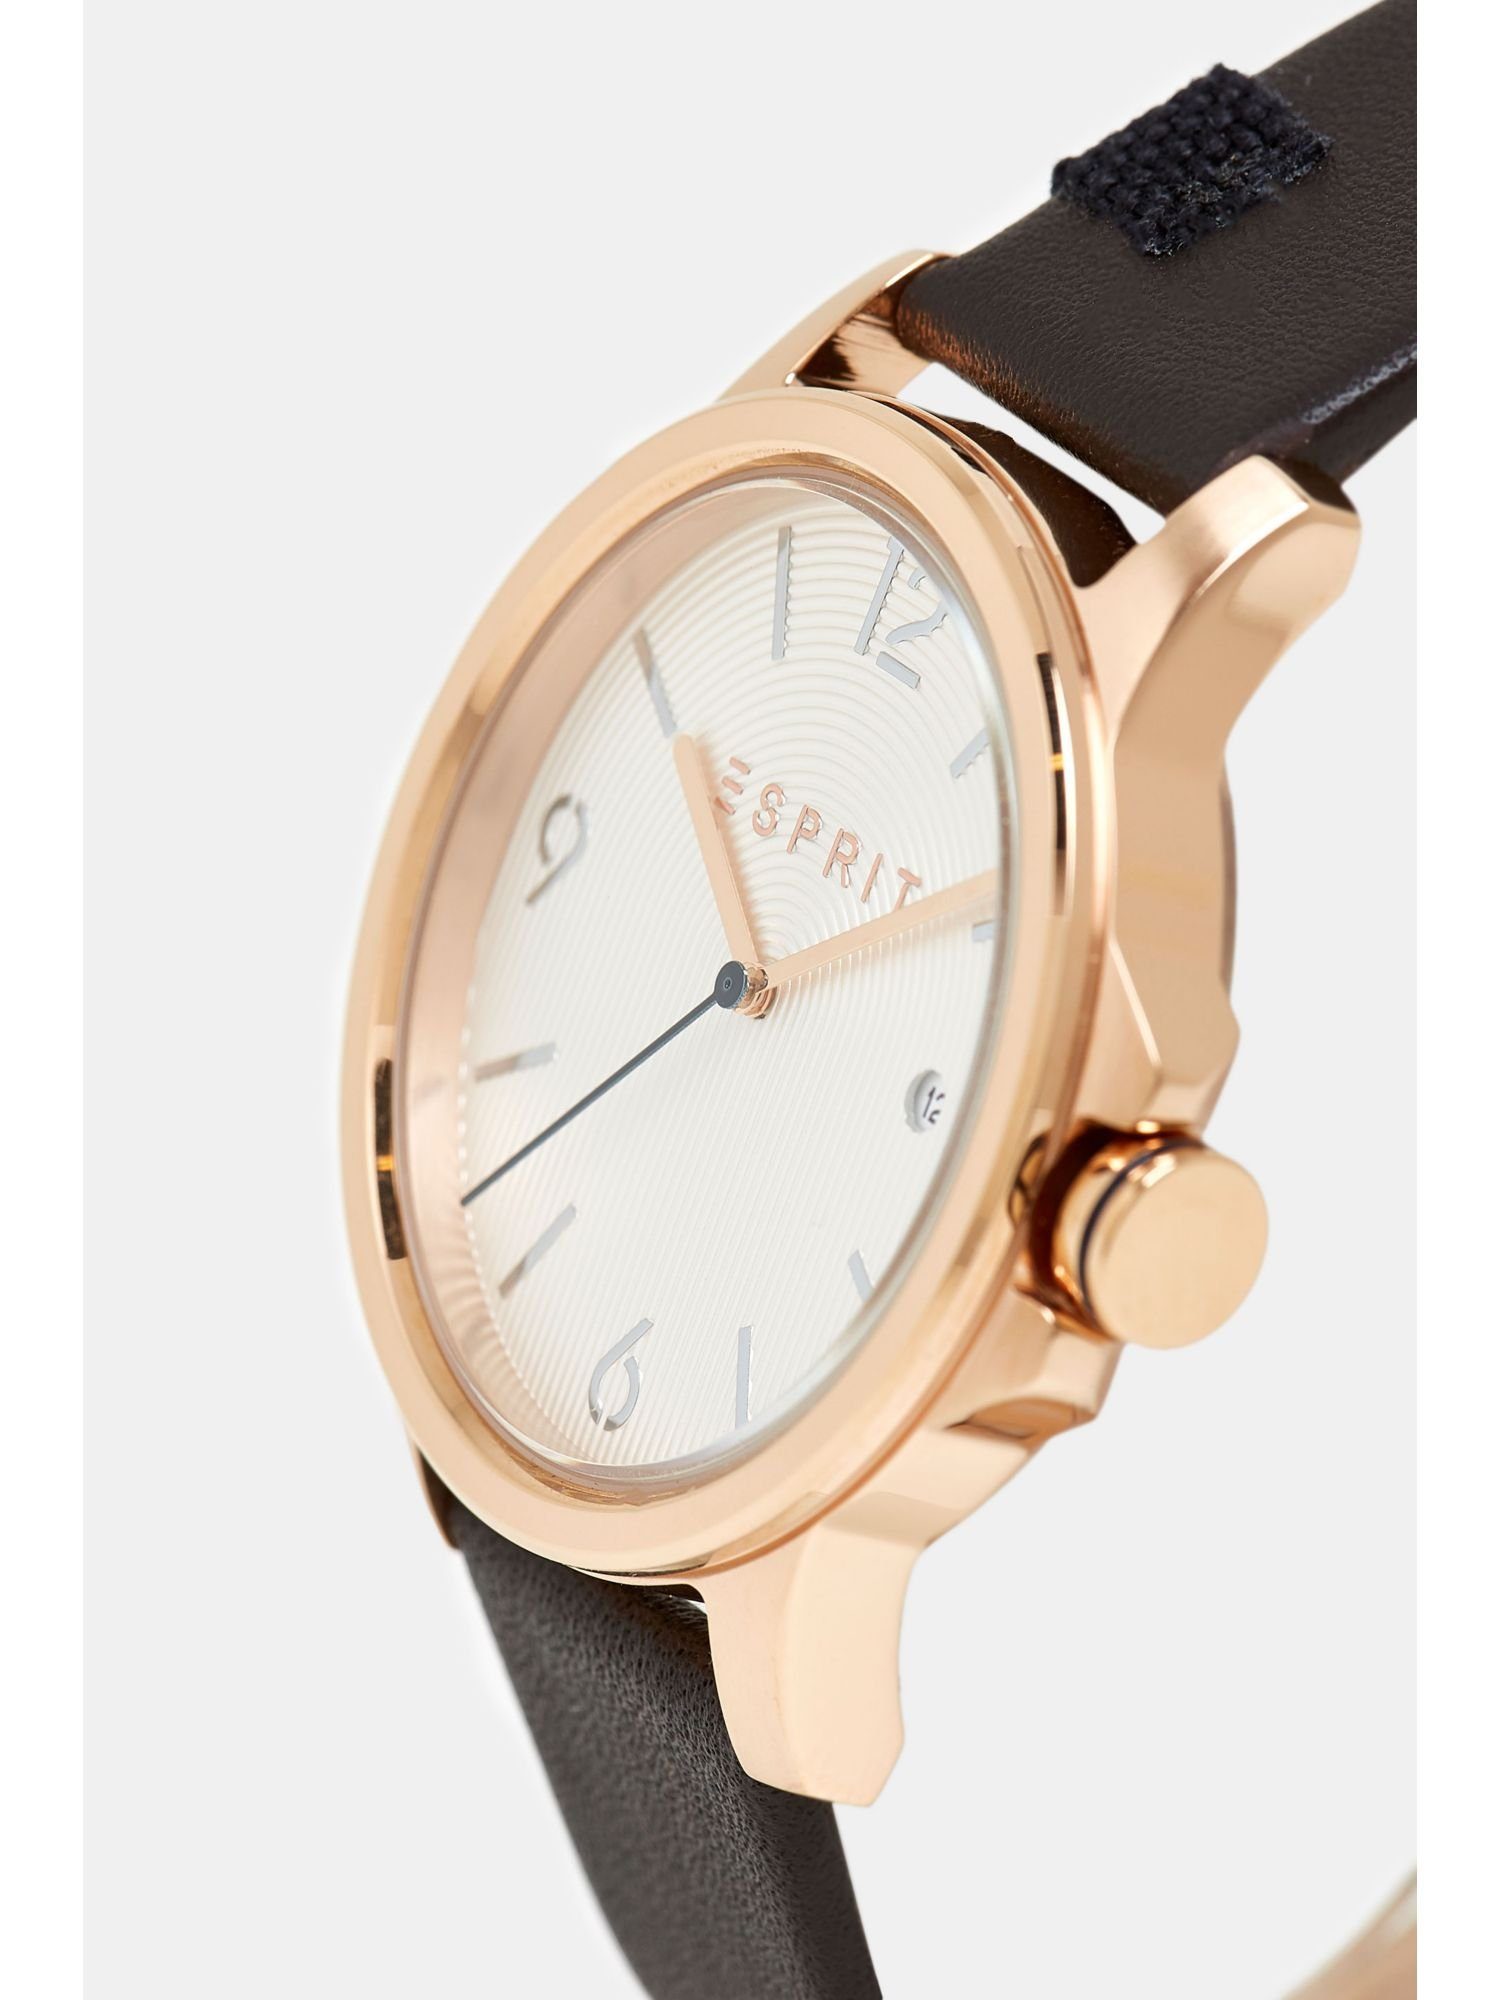 Edelstahl-Uhr Esprit Quarzuhr Leder-Armband mit